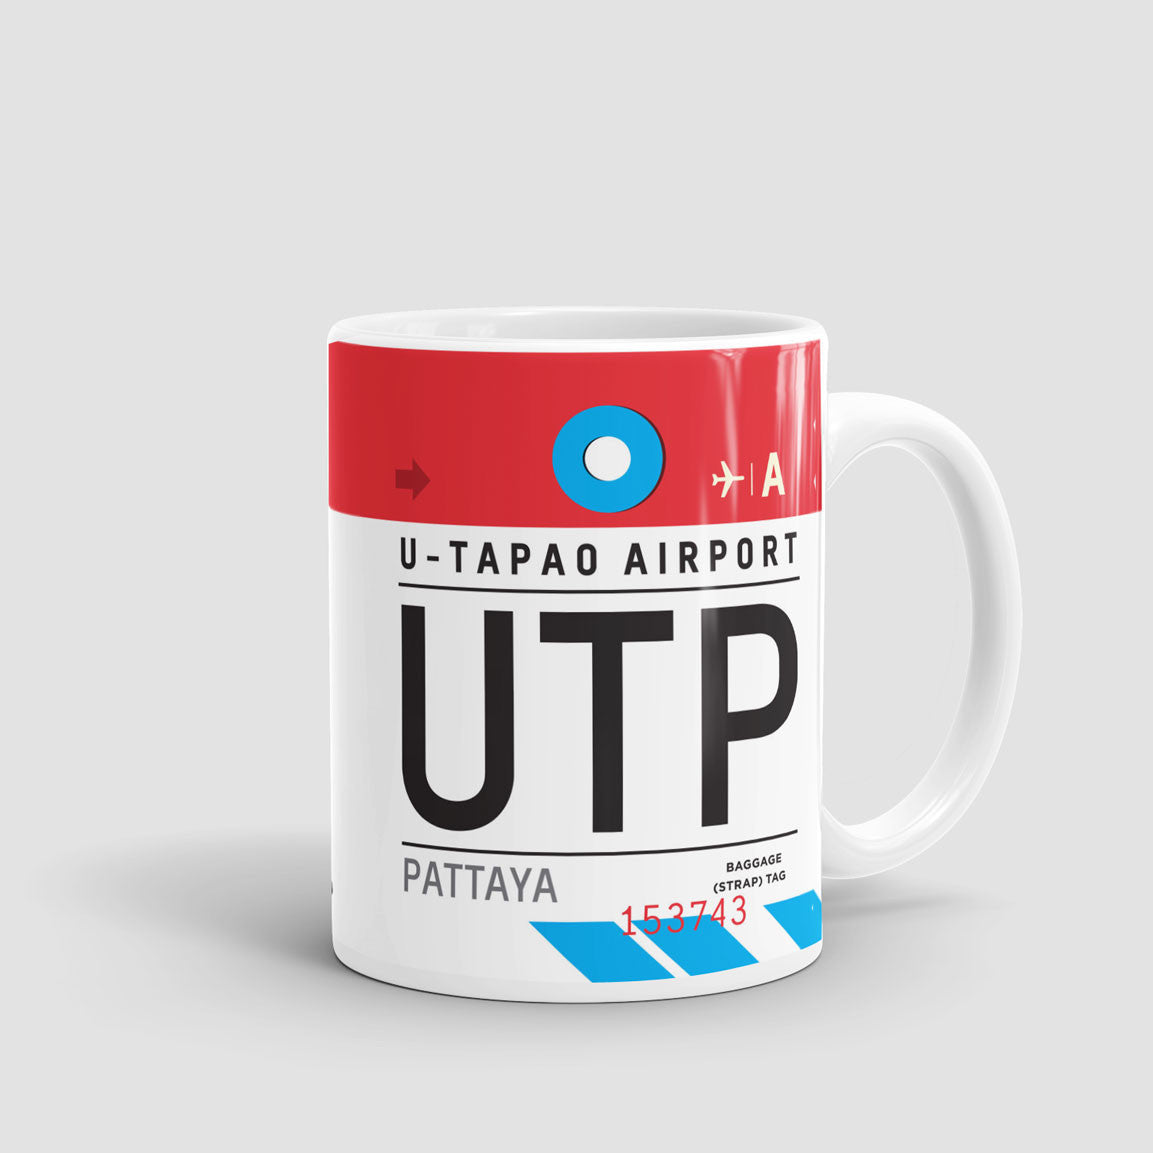 UTP - Mug - Airportag